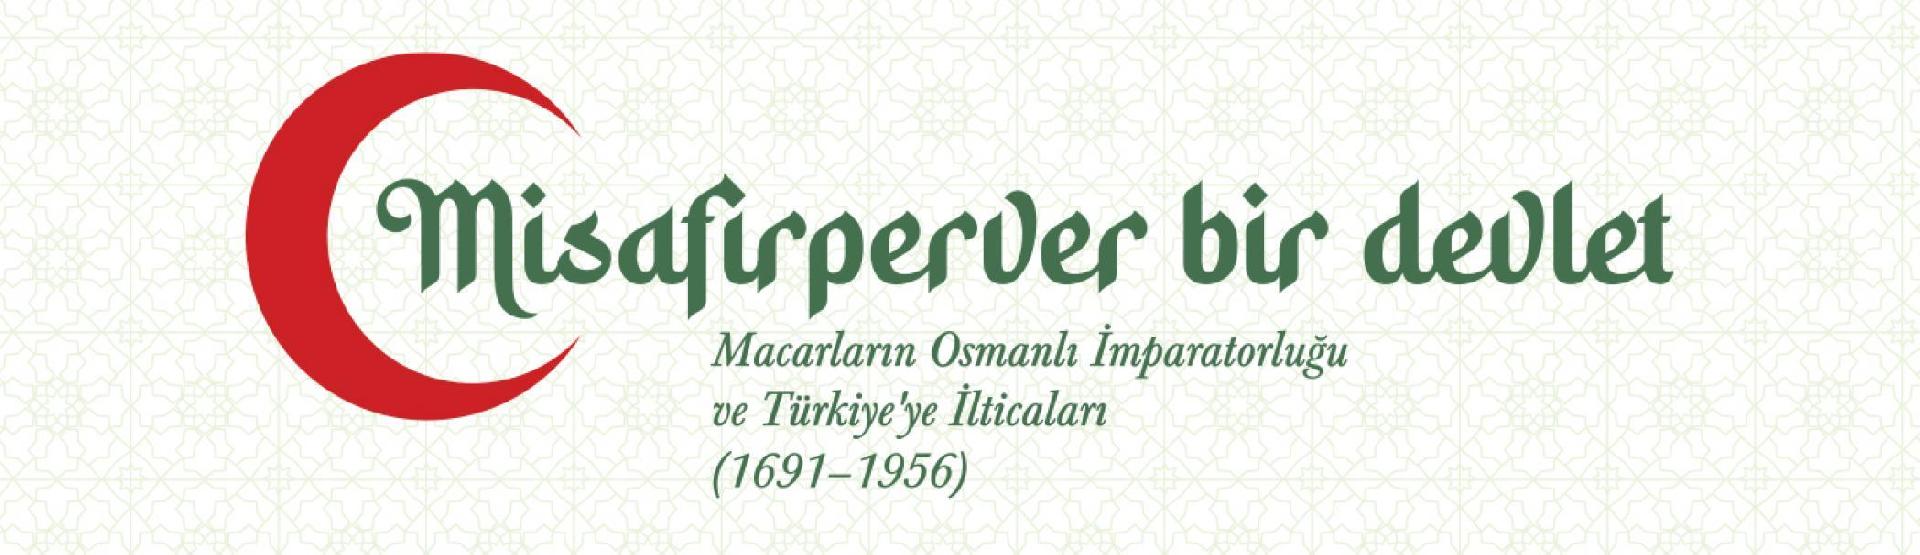 Misafirperver bir devlet: Macarların Osmanlı İmparatorluğu ve Türkiye’ye İlticaları (1691-1956)